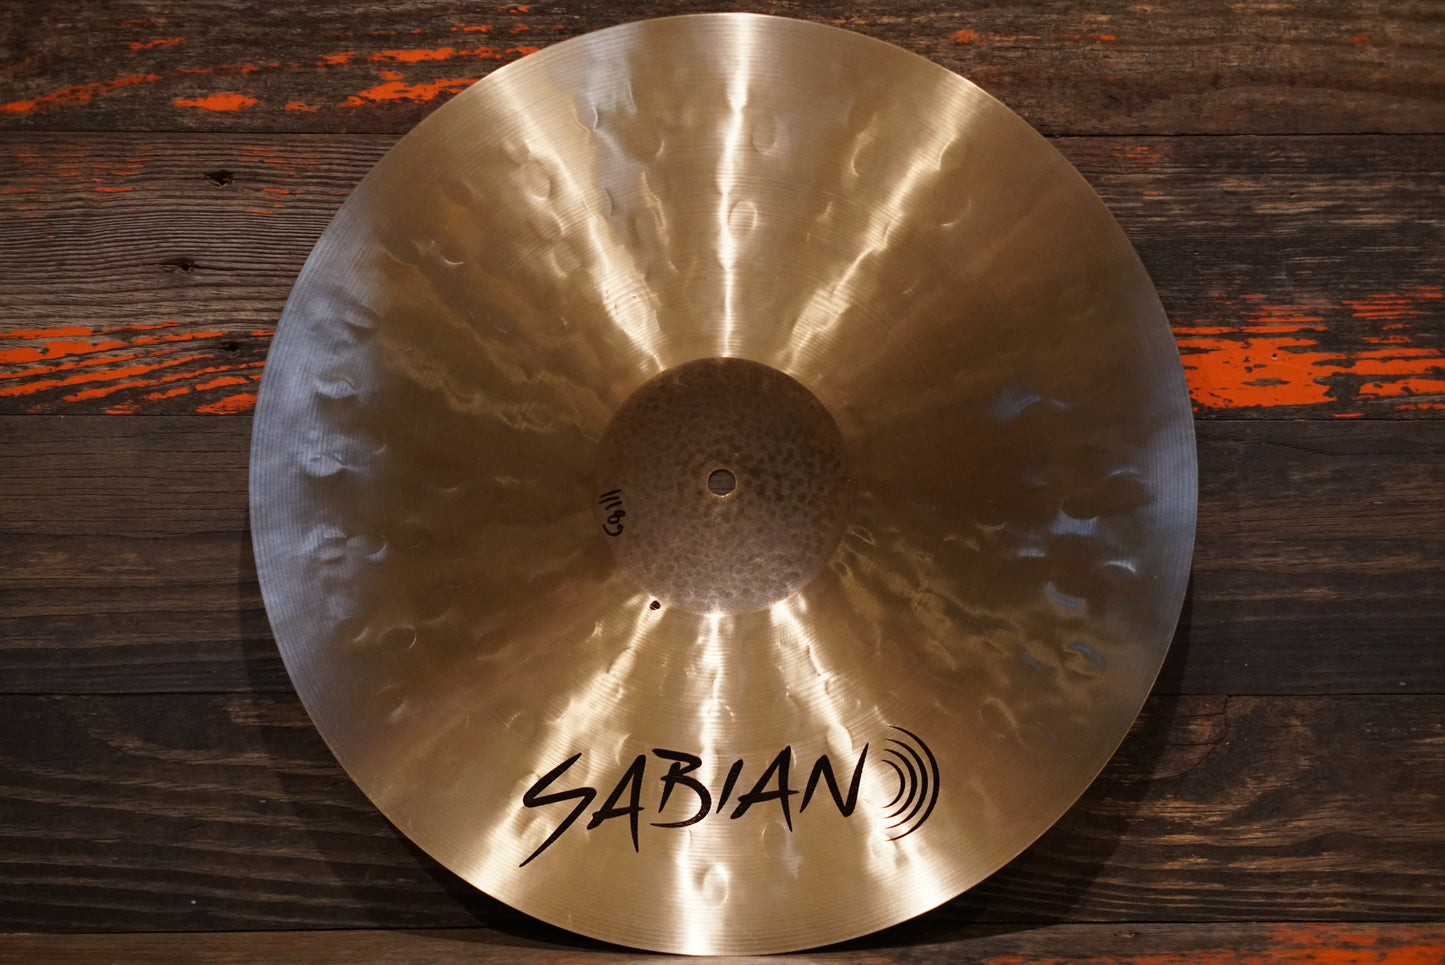 Sabian 17" HHX Complex Thin Crash Cymbal - 1118g